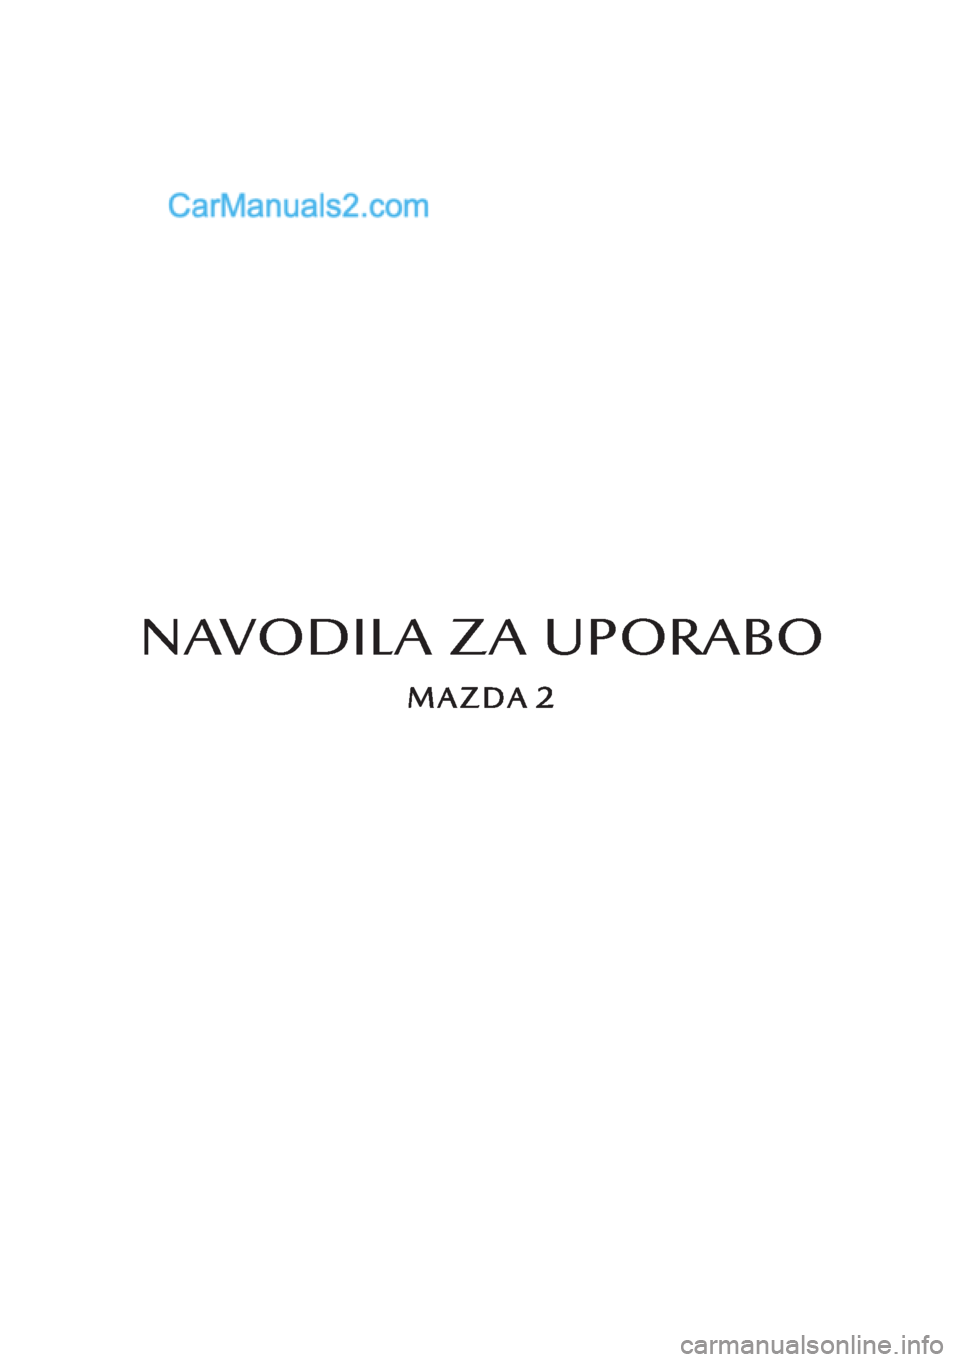 MAZDA MODEL 2 2019  Priročnik za lastnika (in Slovenian) NAVODILA ZA UPORABO  